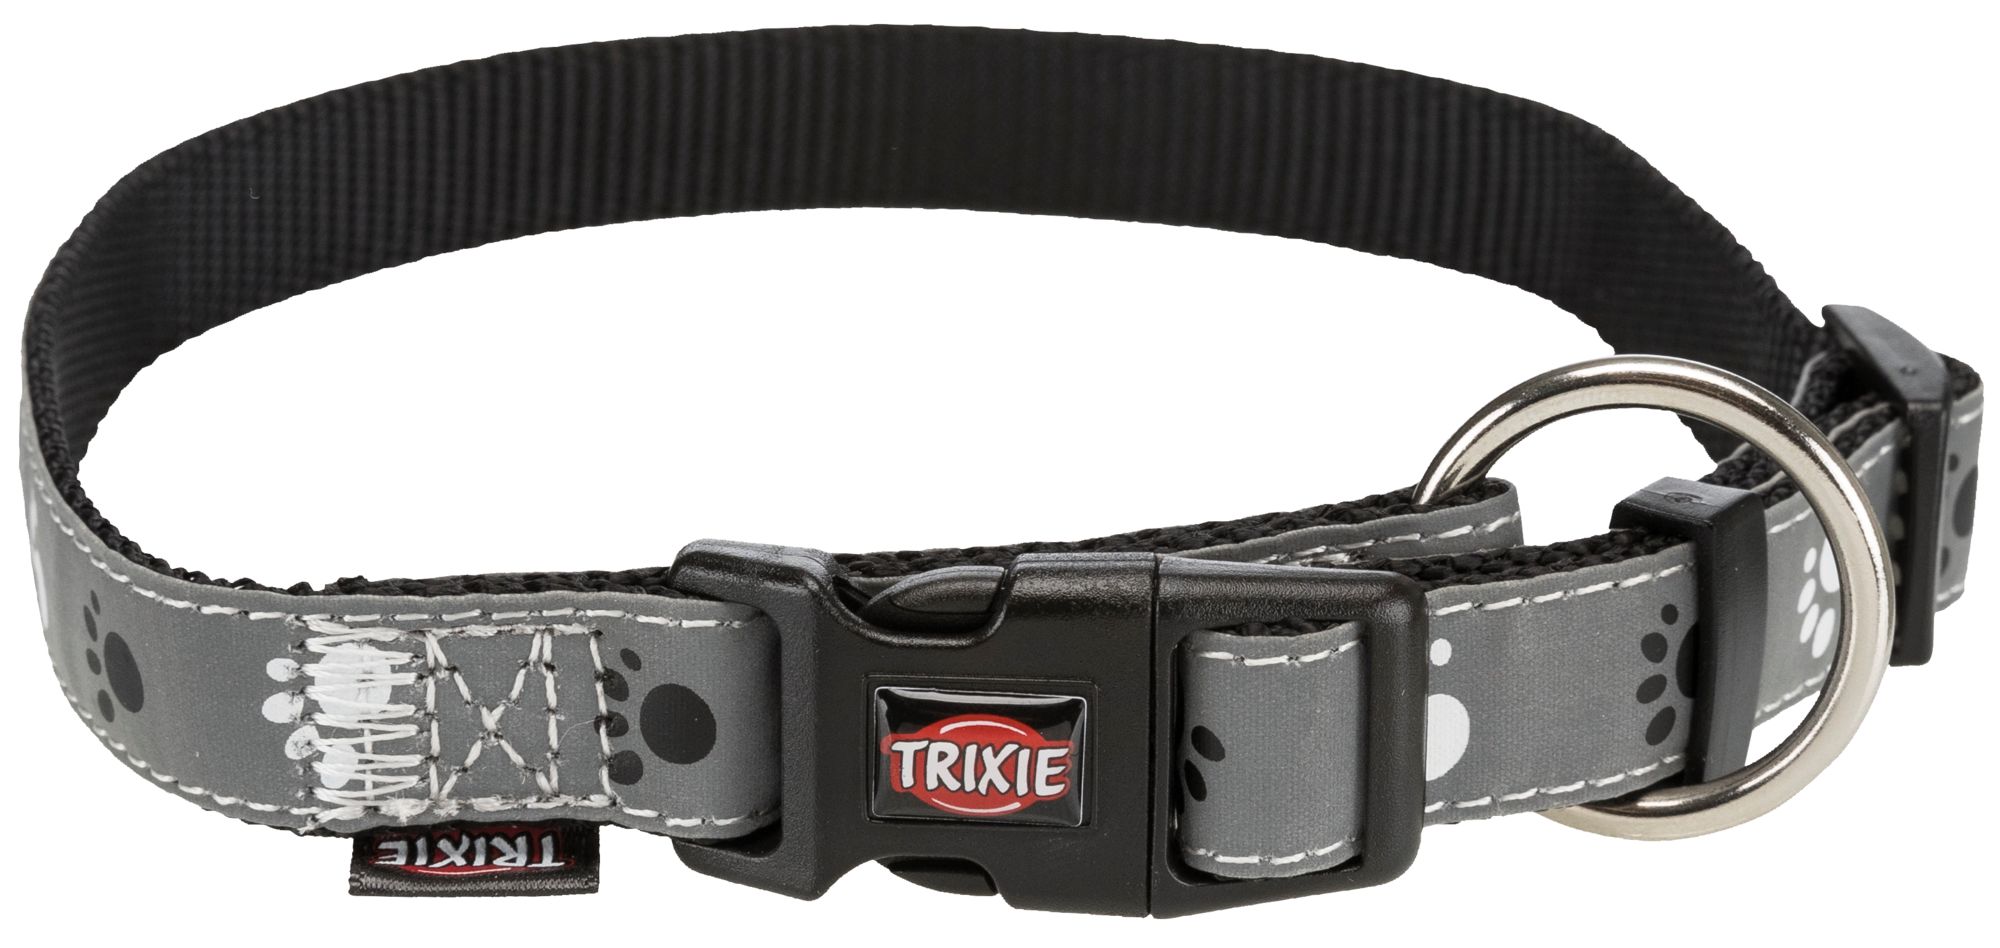 TRIXIE Silver Reflect Halsband TRIXIE Silver Reflect Halsband, S–M: 30–45 cm/15 mm, schwarz/silbergrau